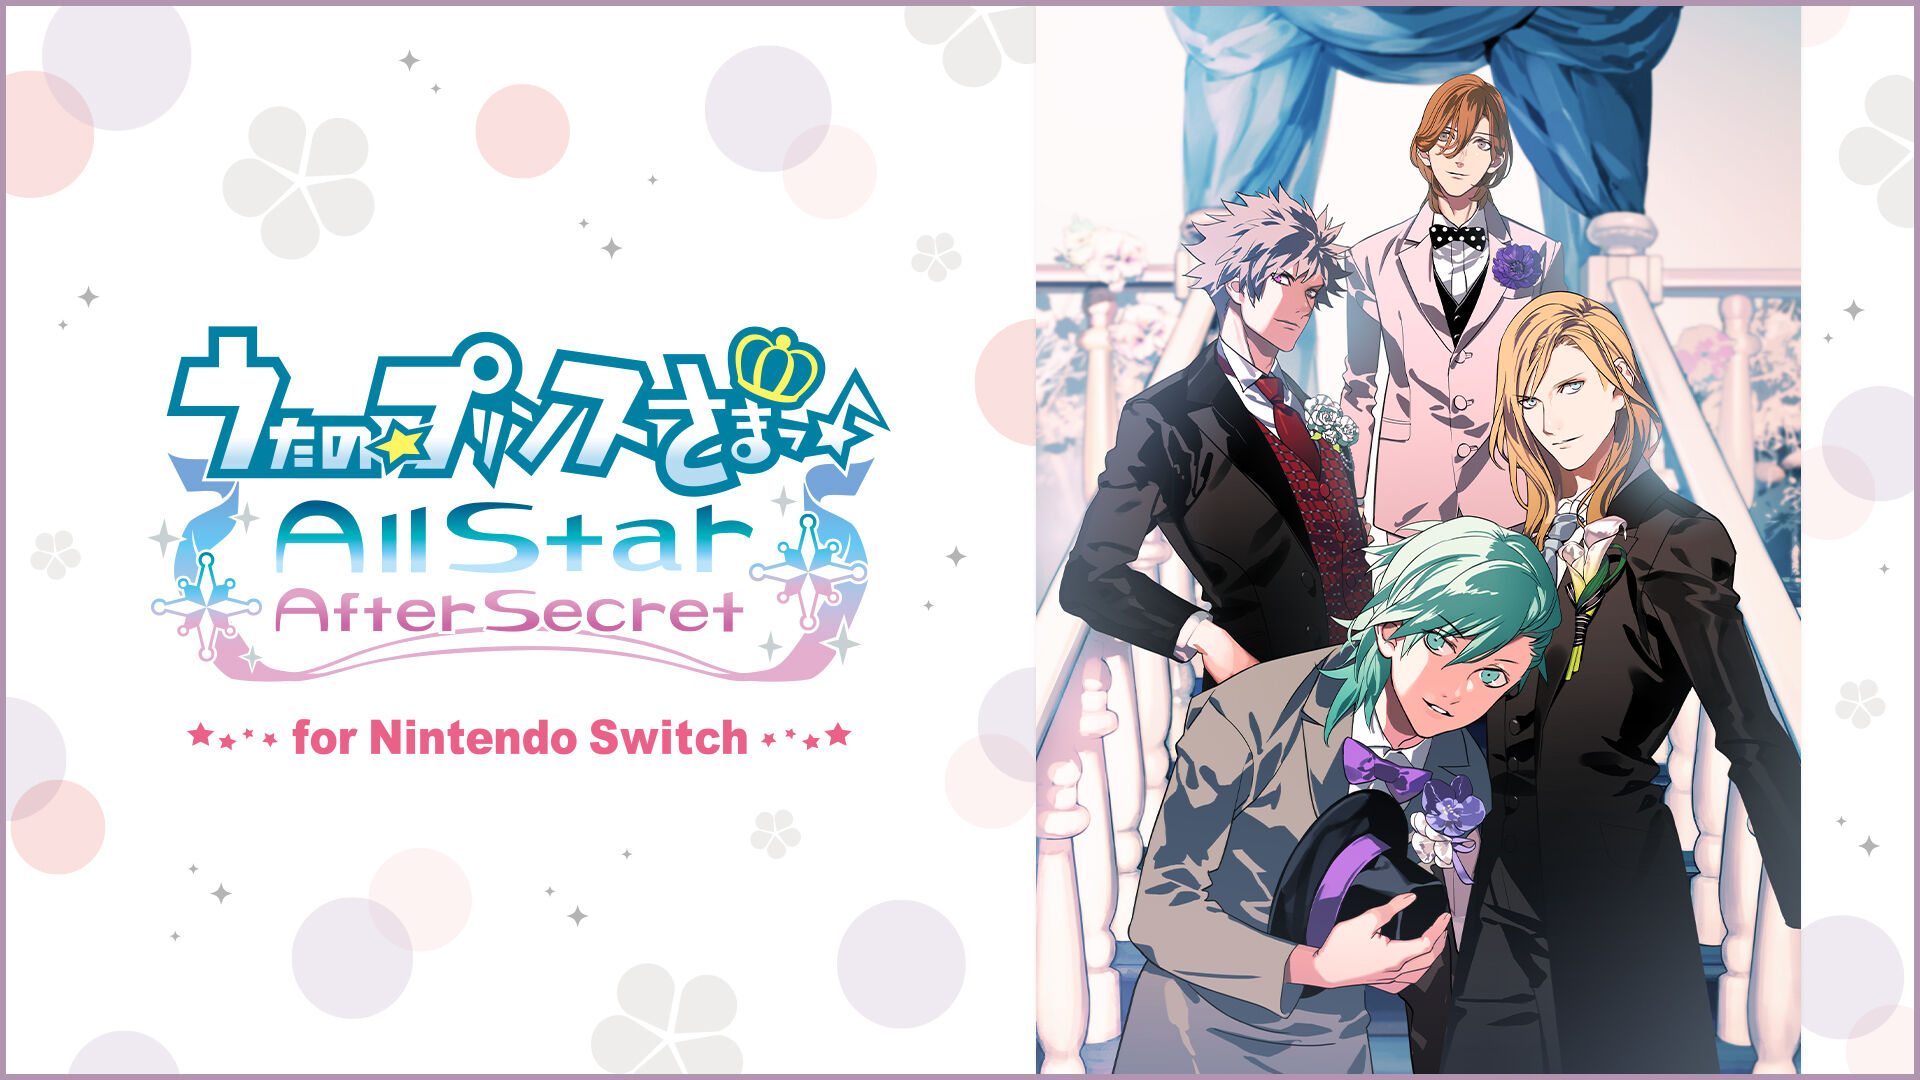 うたの☆プリンスさまっ♪All Star After Secret for Nintendo Switch 